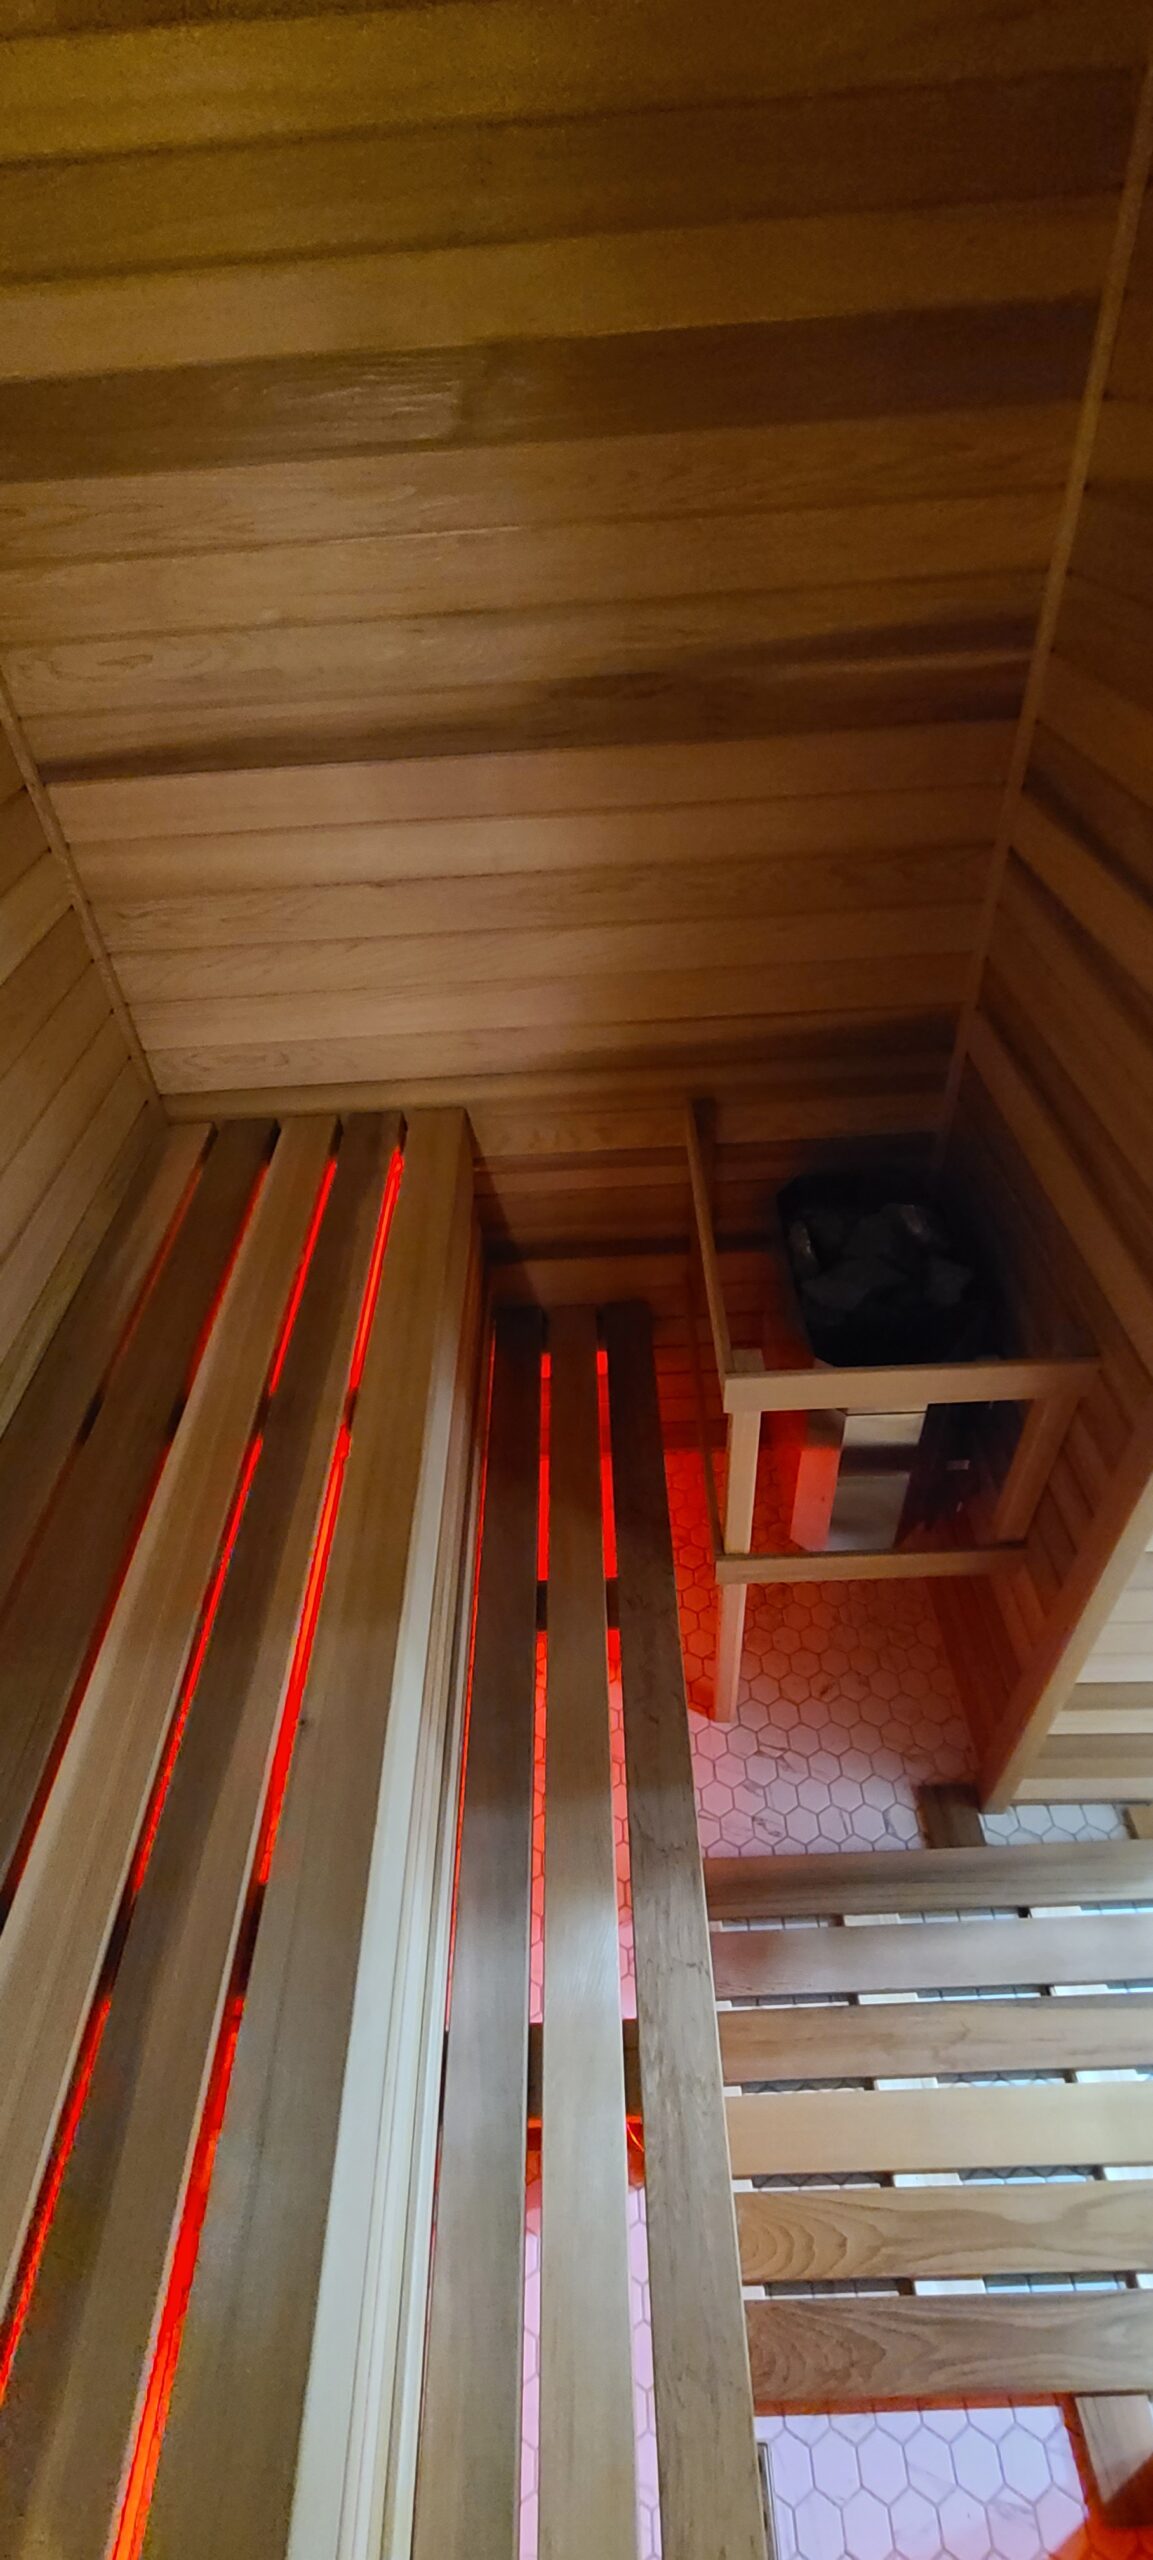 Custom Sauna In Basement